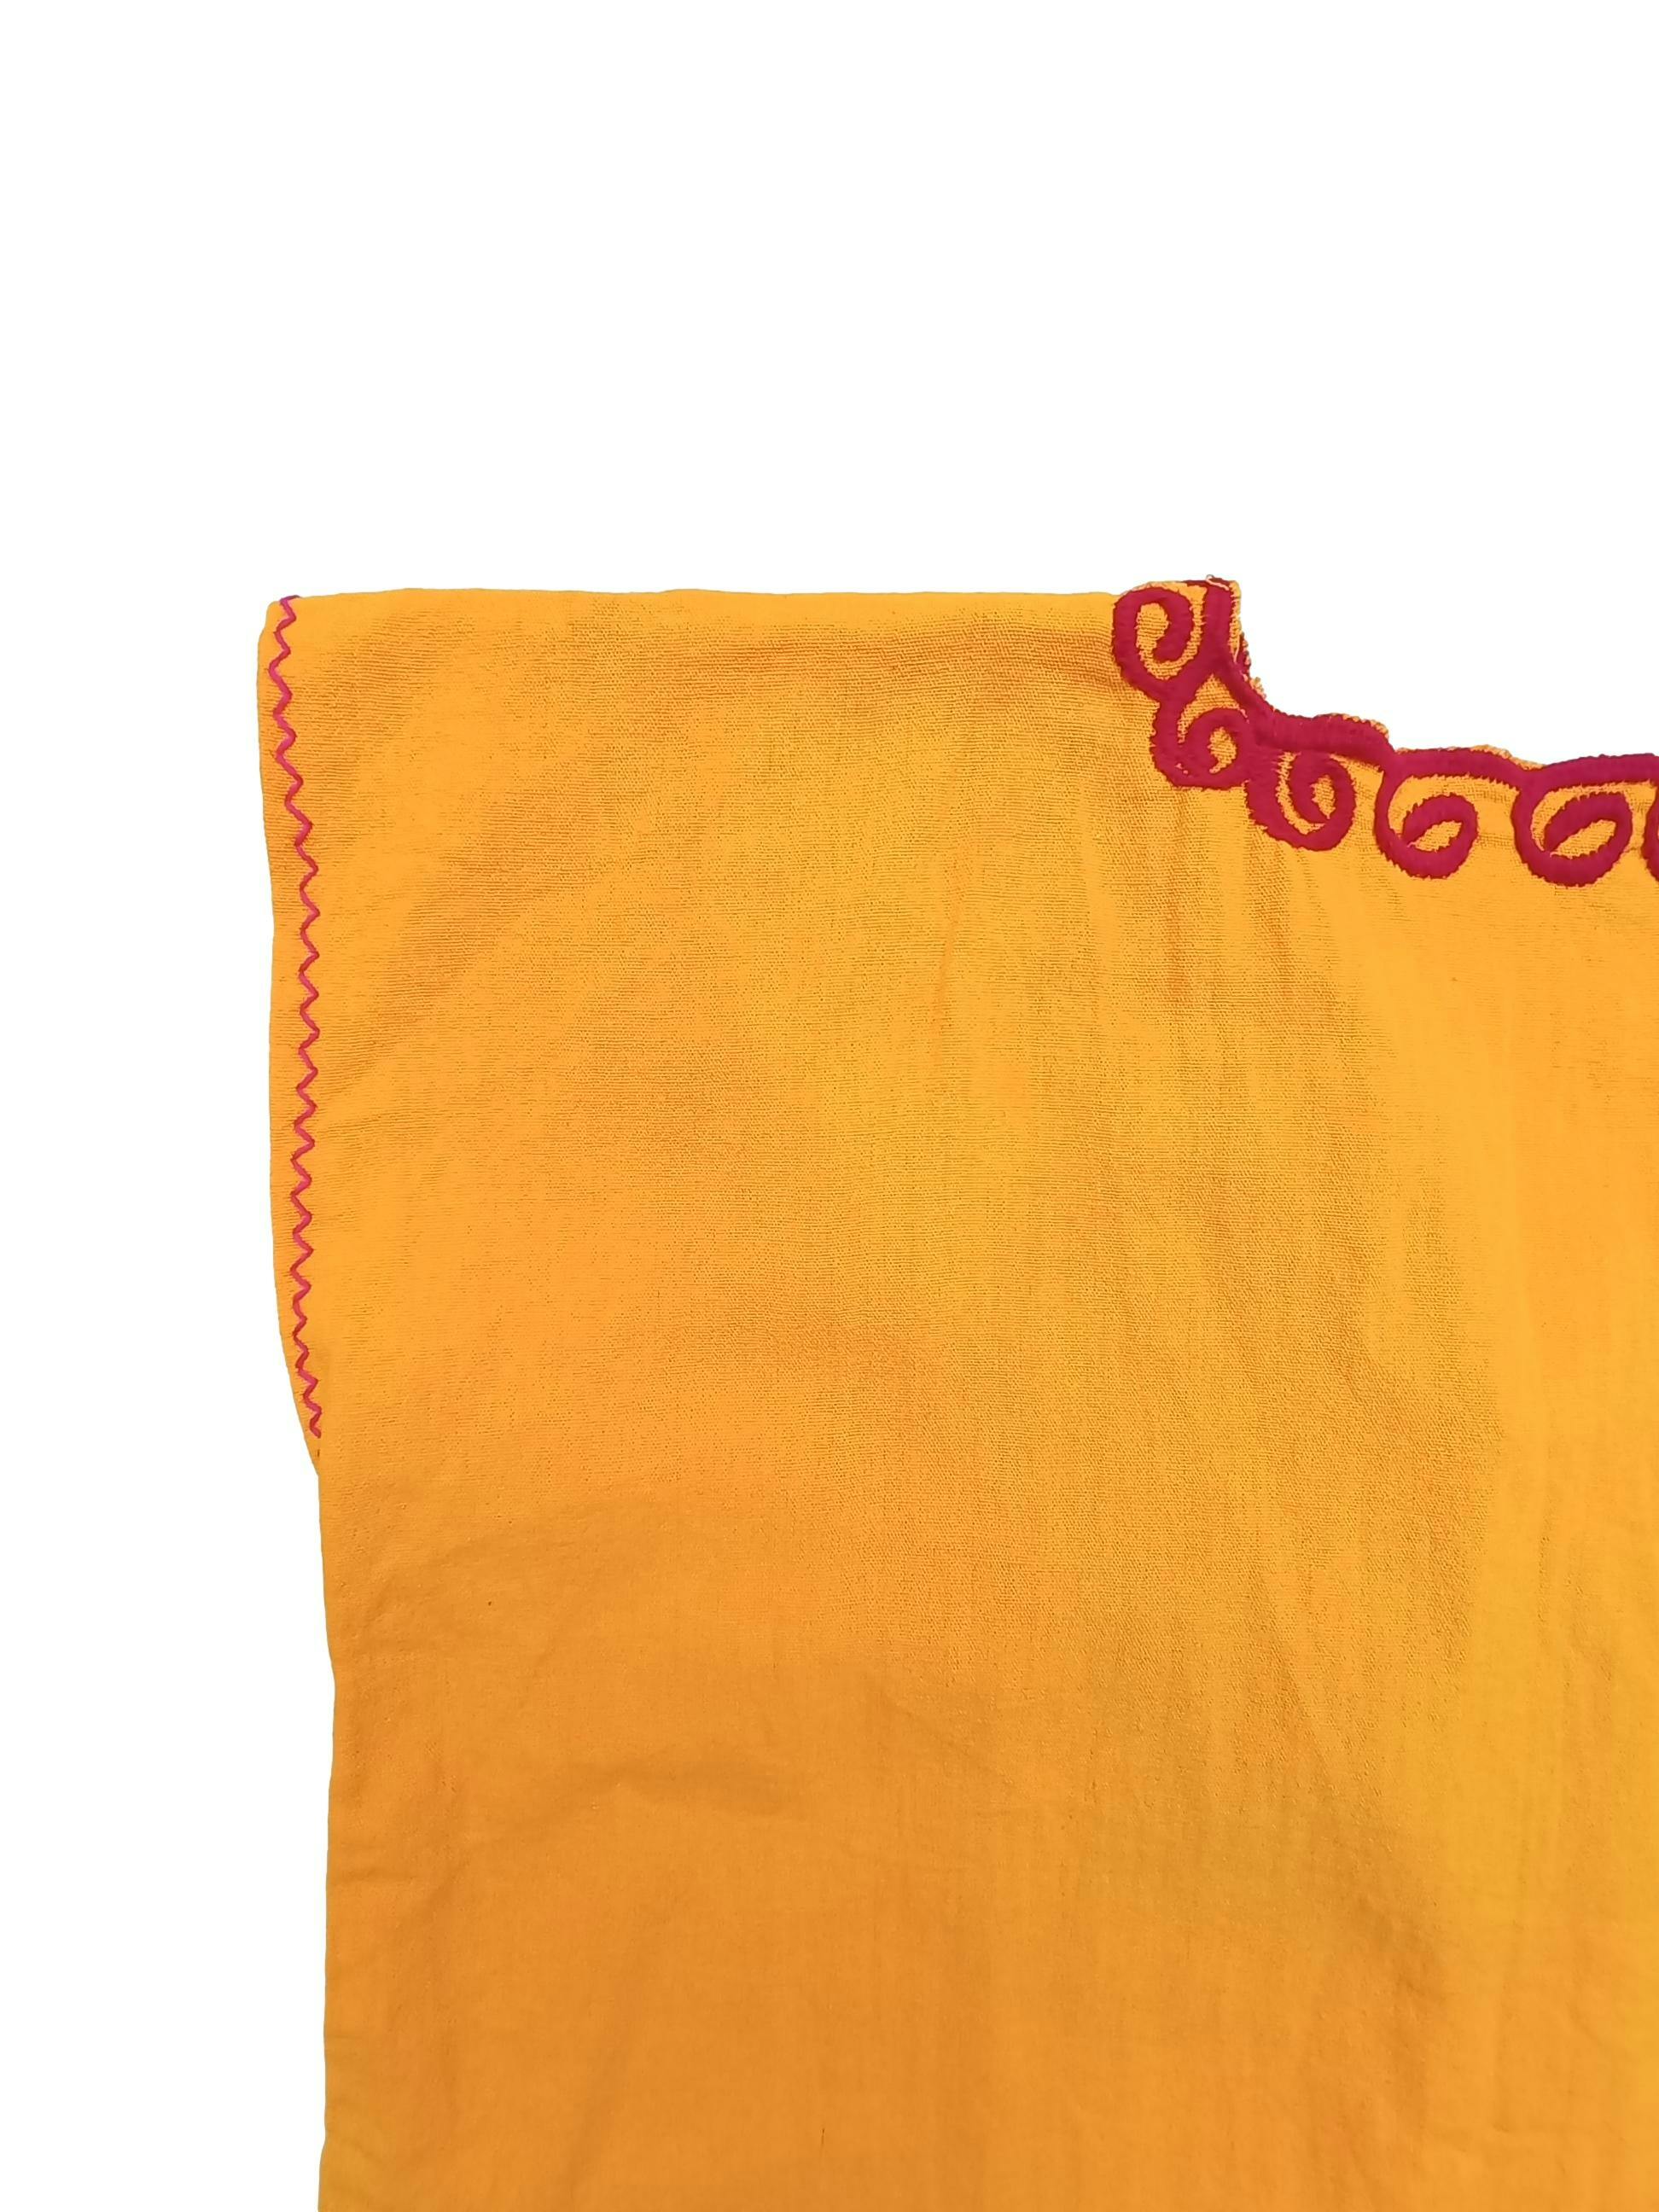 Huipil original mexicano bordado delantero y posterior a mano, amarillo manga cero, Busto: 104 cm, Largo: 63 cm. 